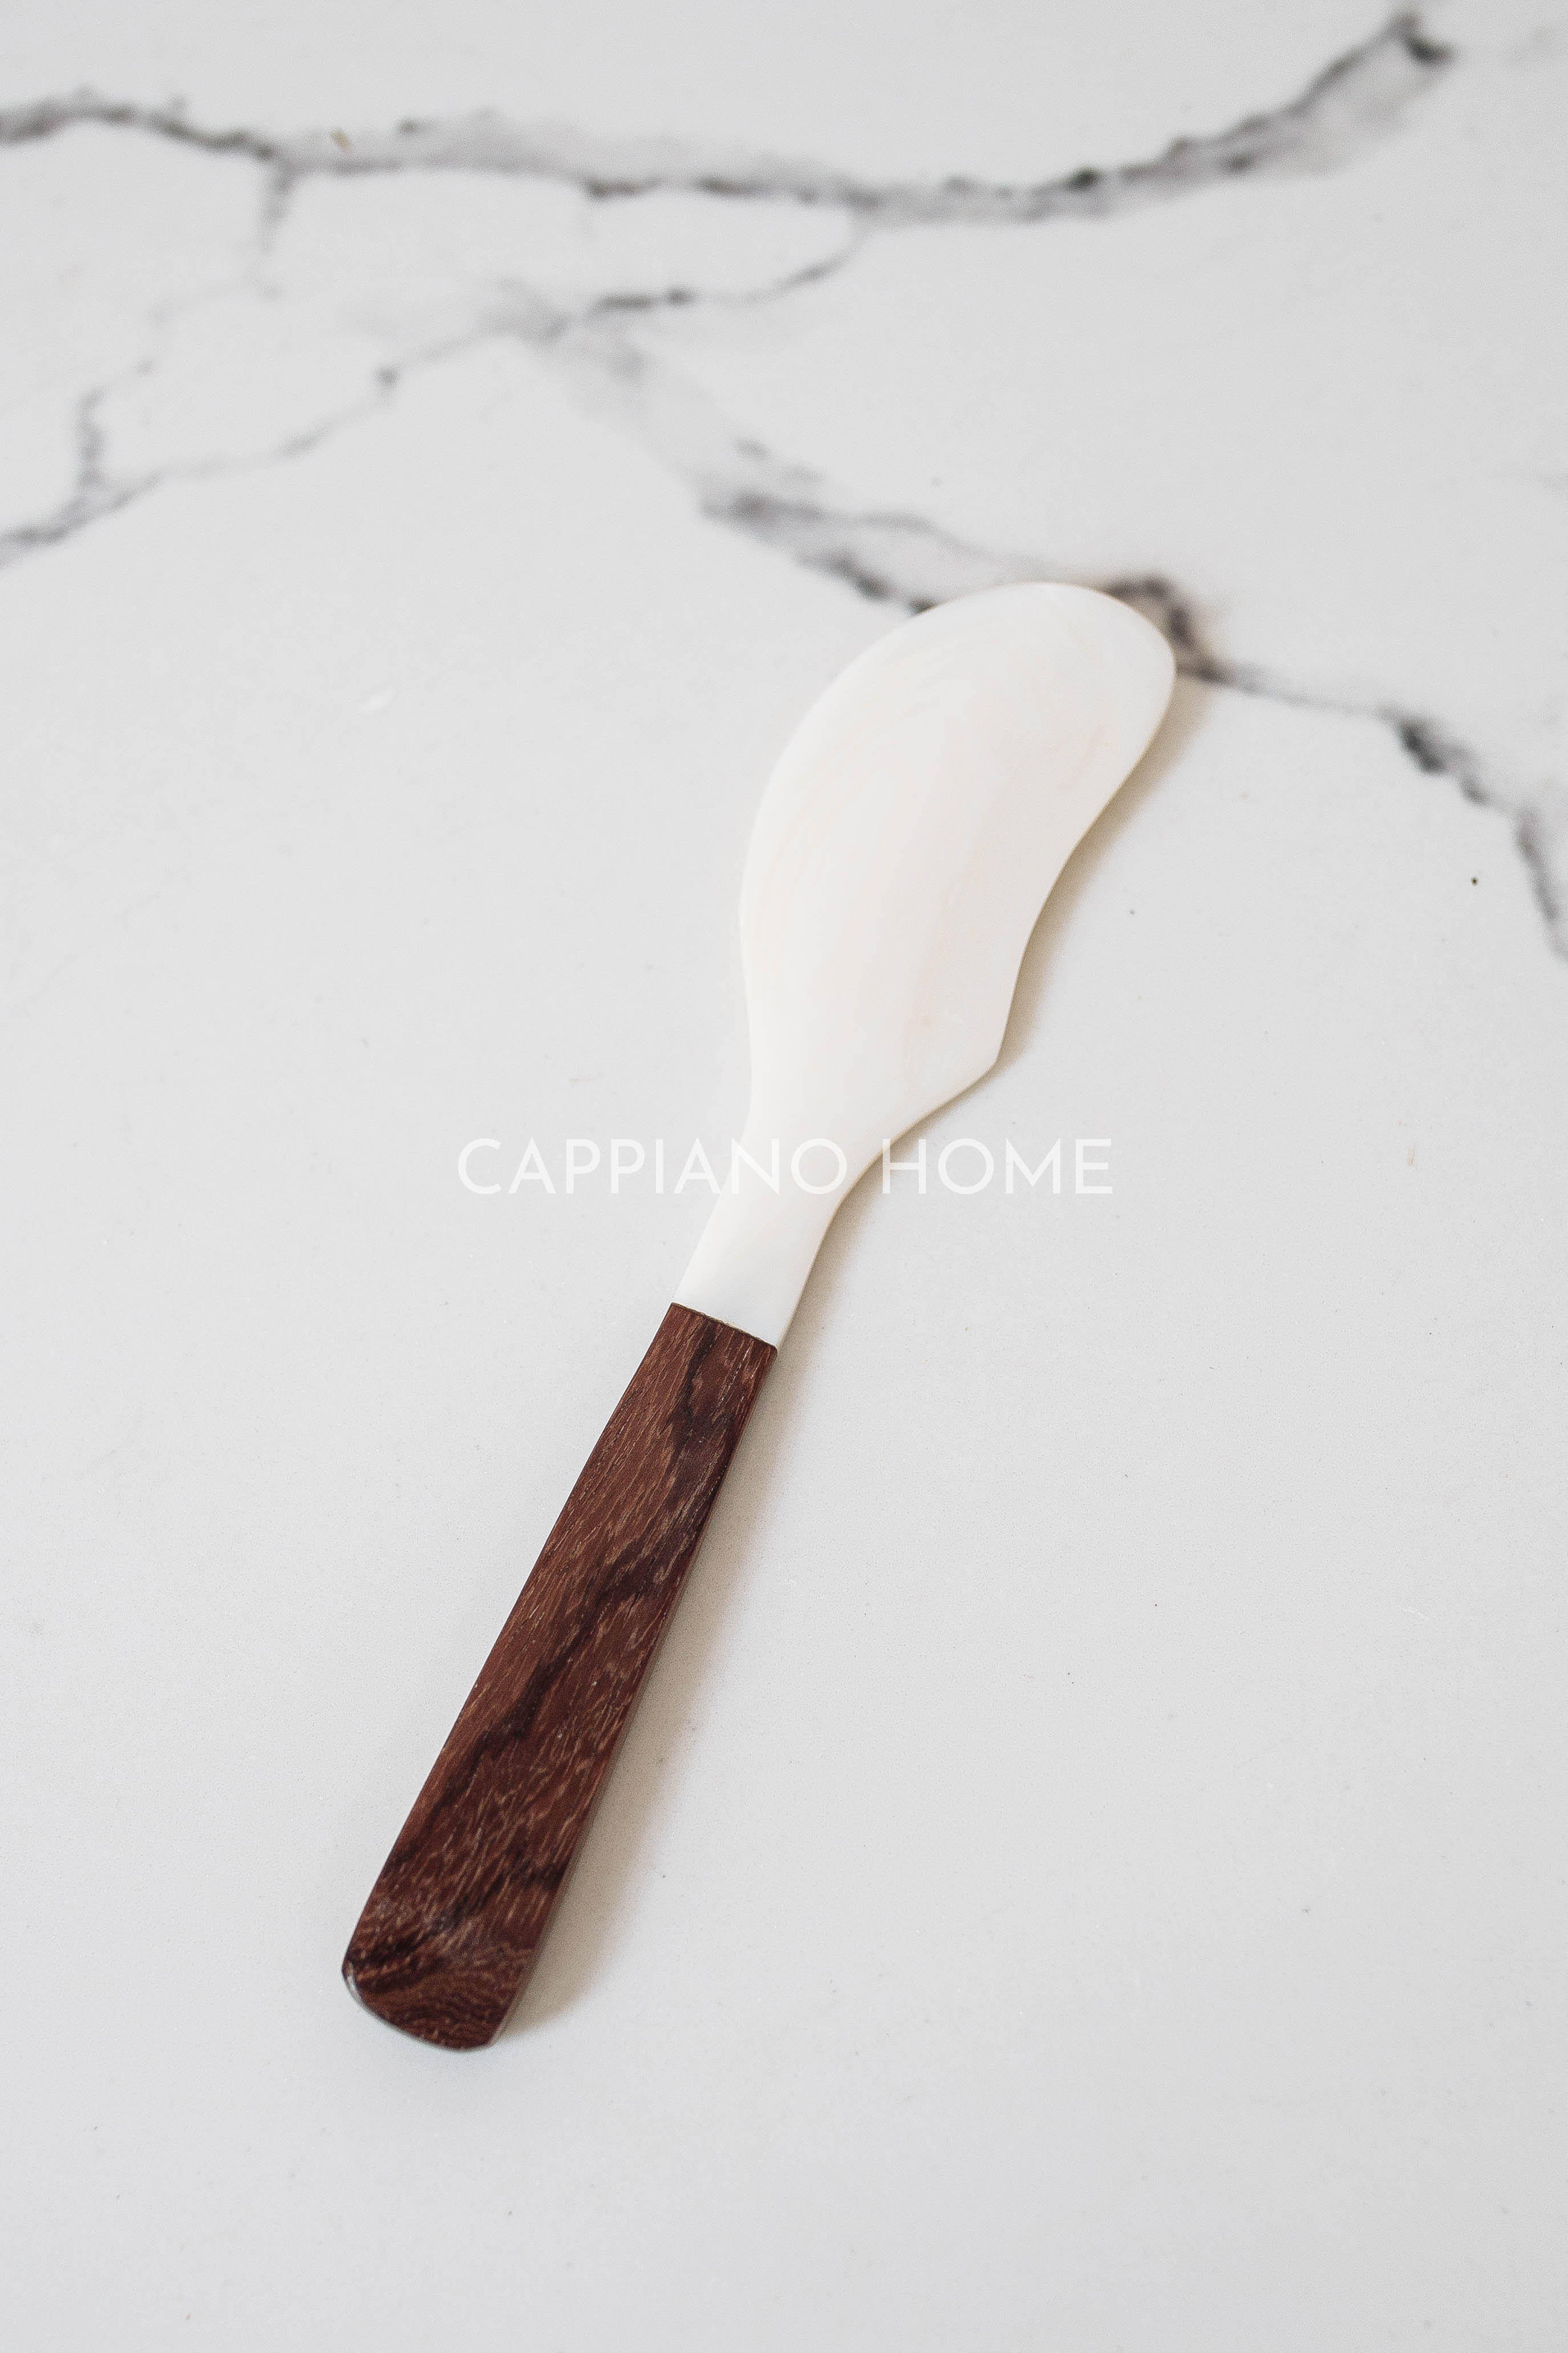 Dao chuôi gỗ đen , dao khảm trai phết bơ, mứt, pho mai tiện lợi | Cappiano Home